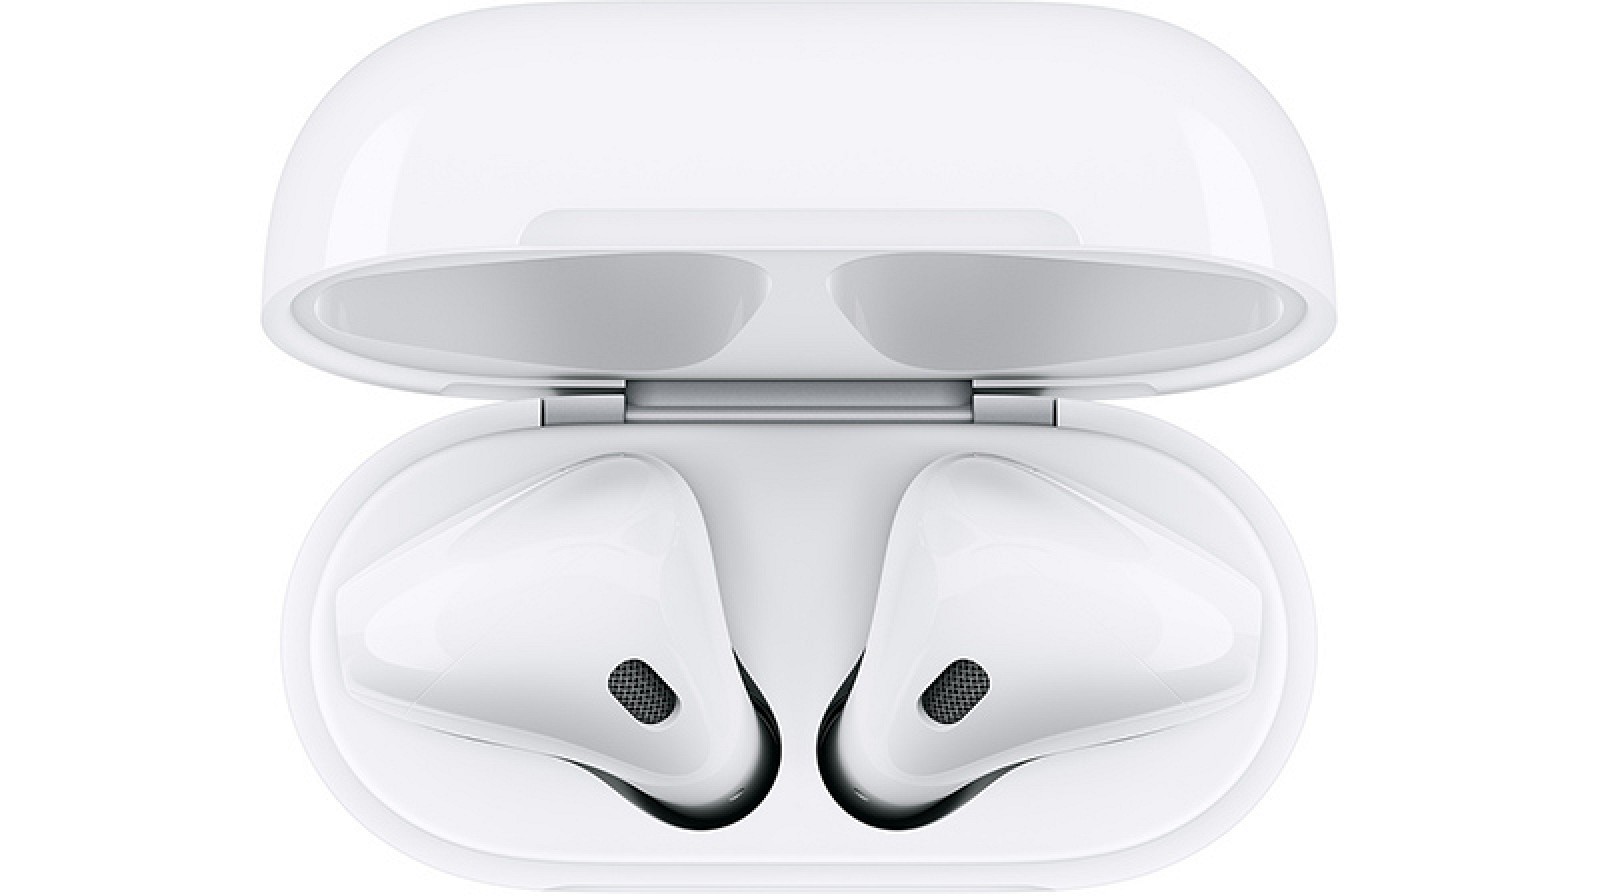 El proveedor de Apple incrementa la producción de piezas AirPods 2 para satisfacer la alta demanda